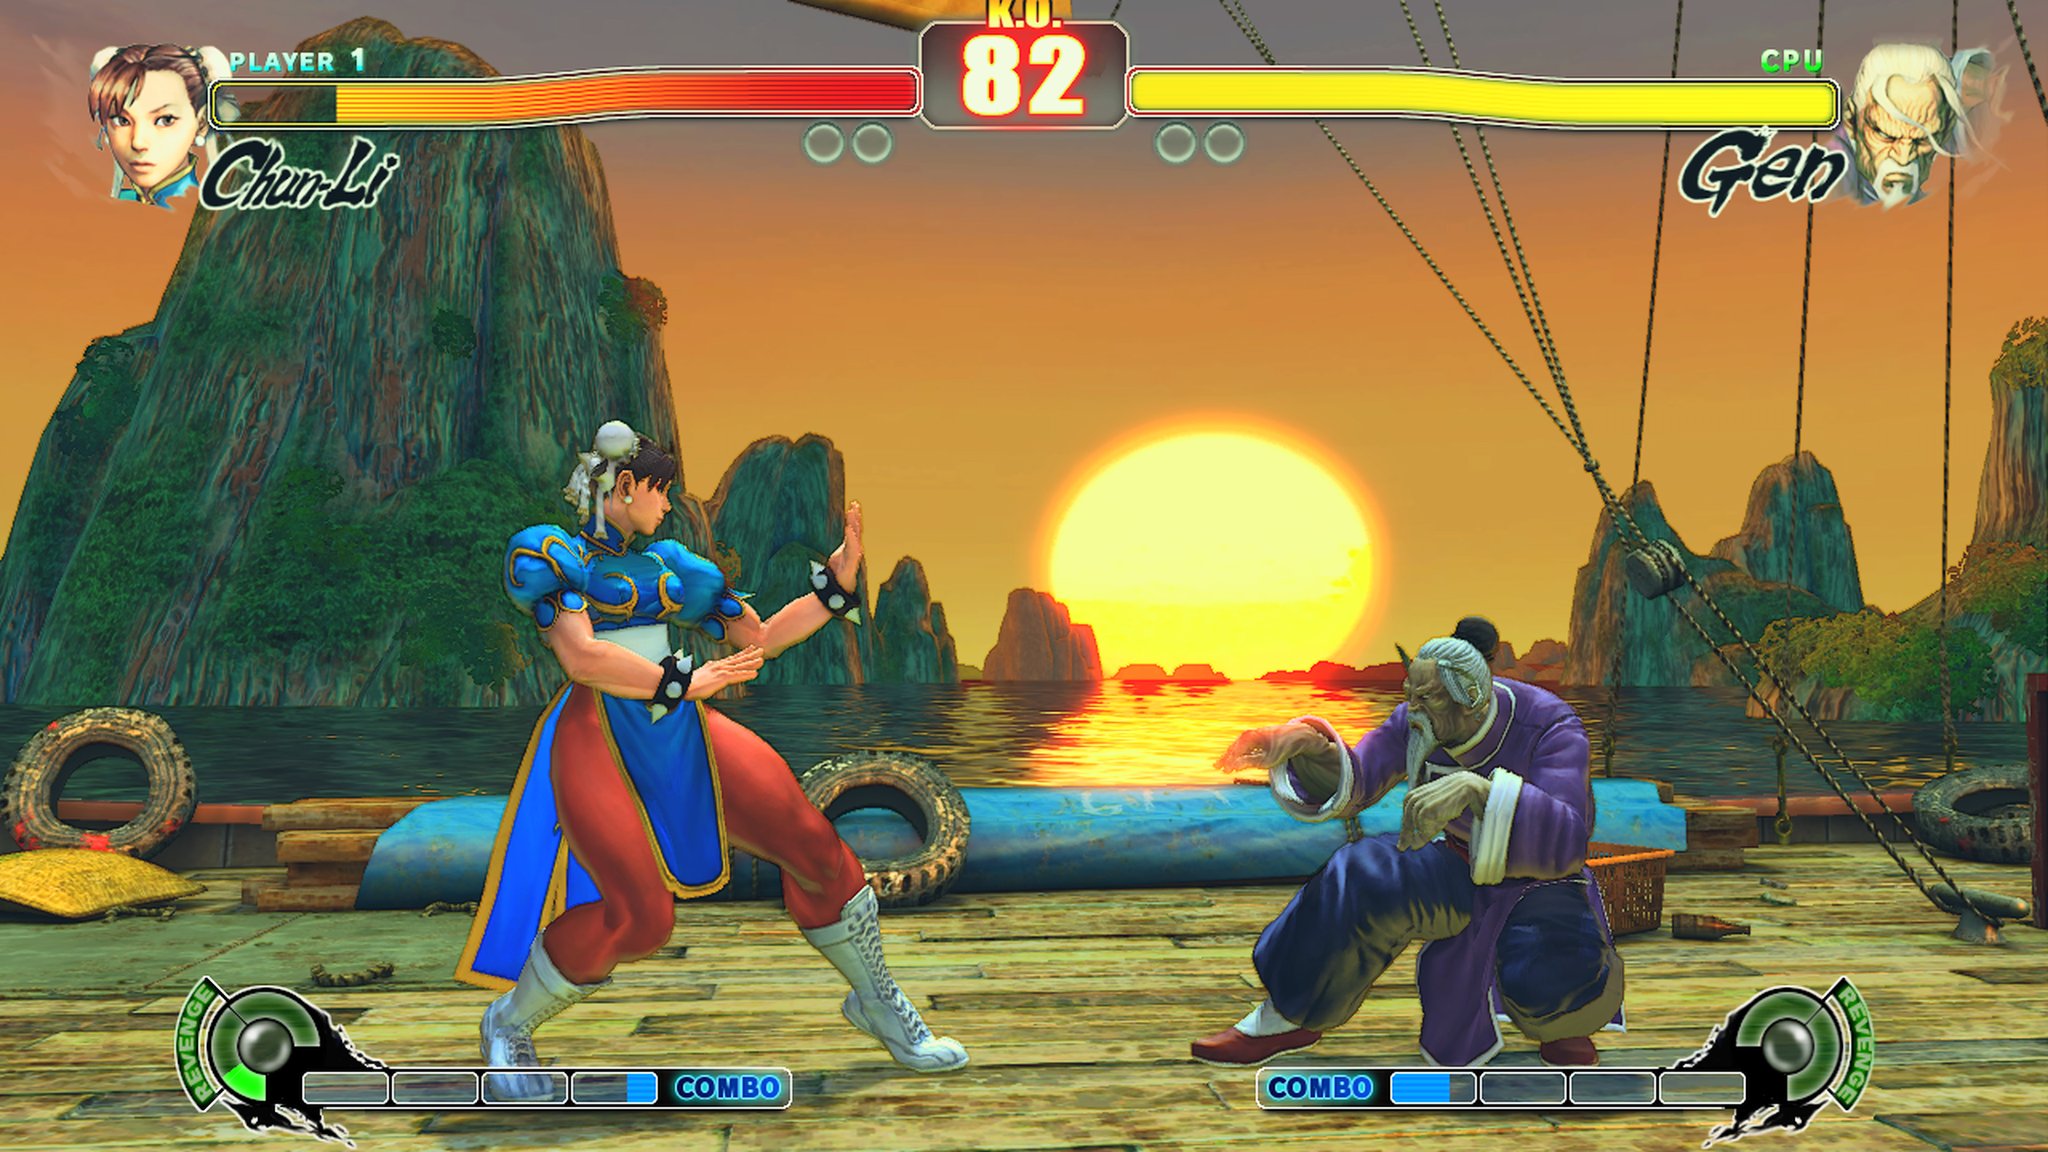 Final Fight X Street Fighter (4 Players) Co-op Gameplay -  Ken/Ryu/Chun-Li/Fei Long [1080p 60fps] 